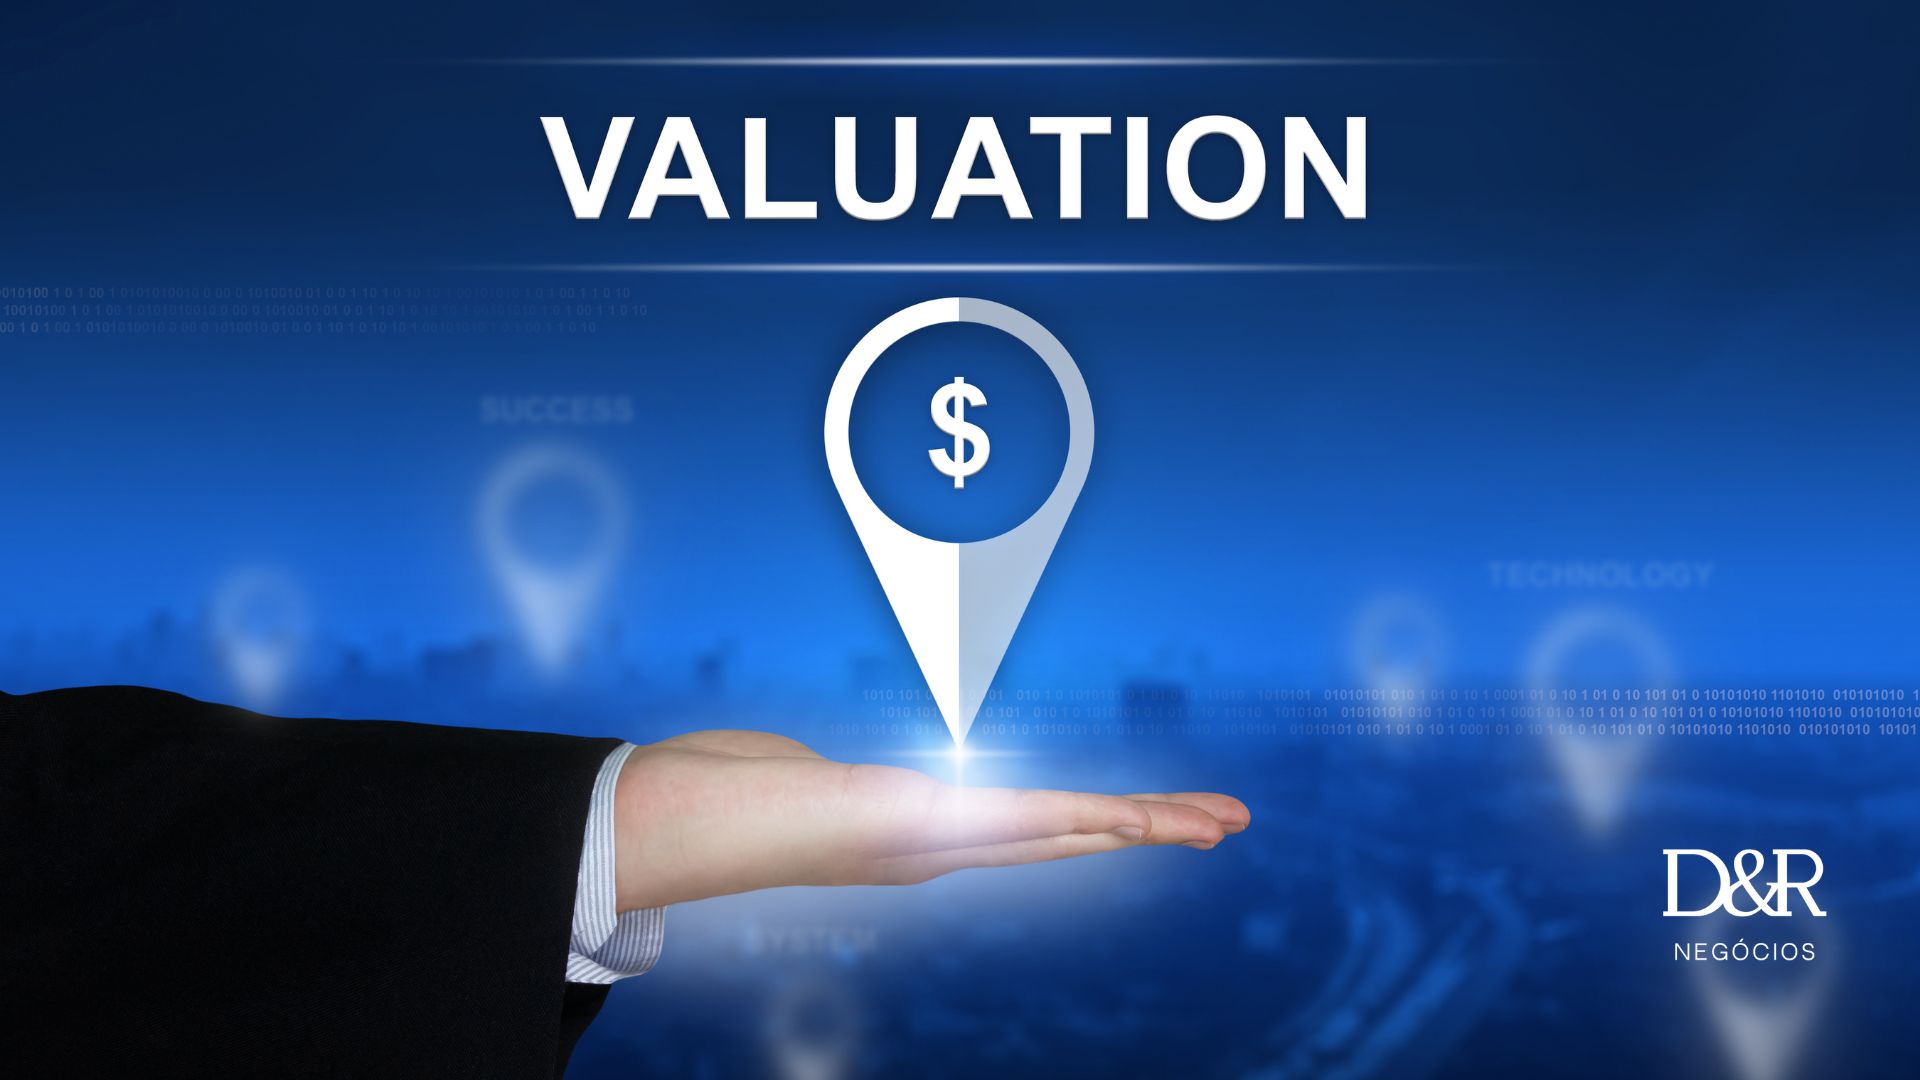 Avaliação de Marcas D&R Negócios - Brand Valuation